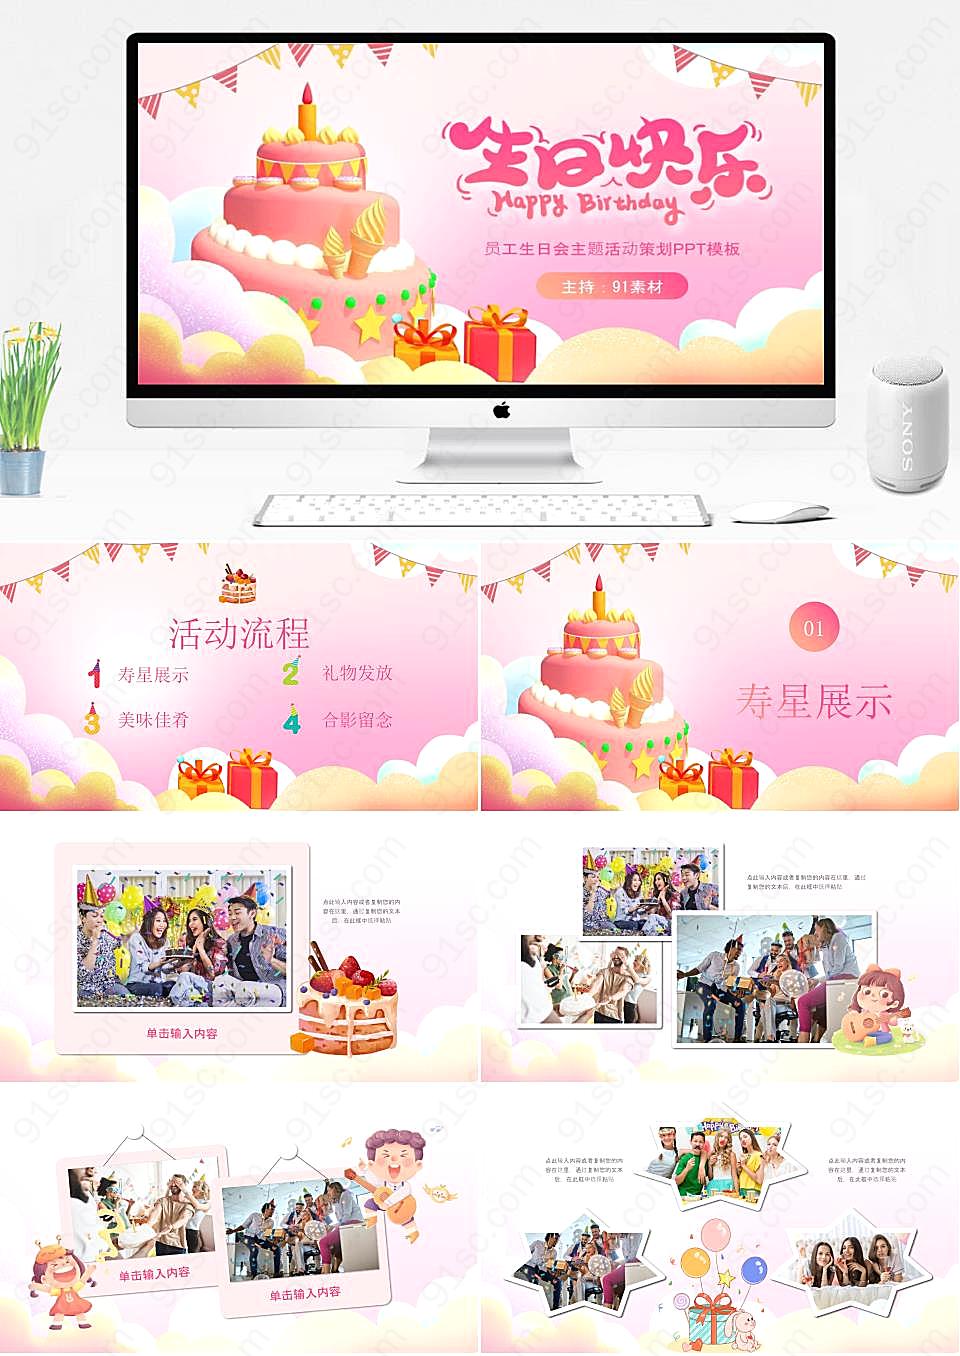 粉色气球蛋糕甜品员工生日庆祝PPT模板节日庆典下载